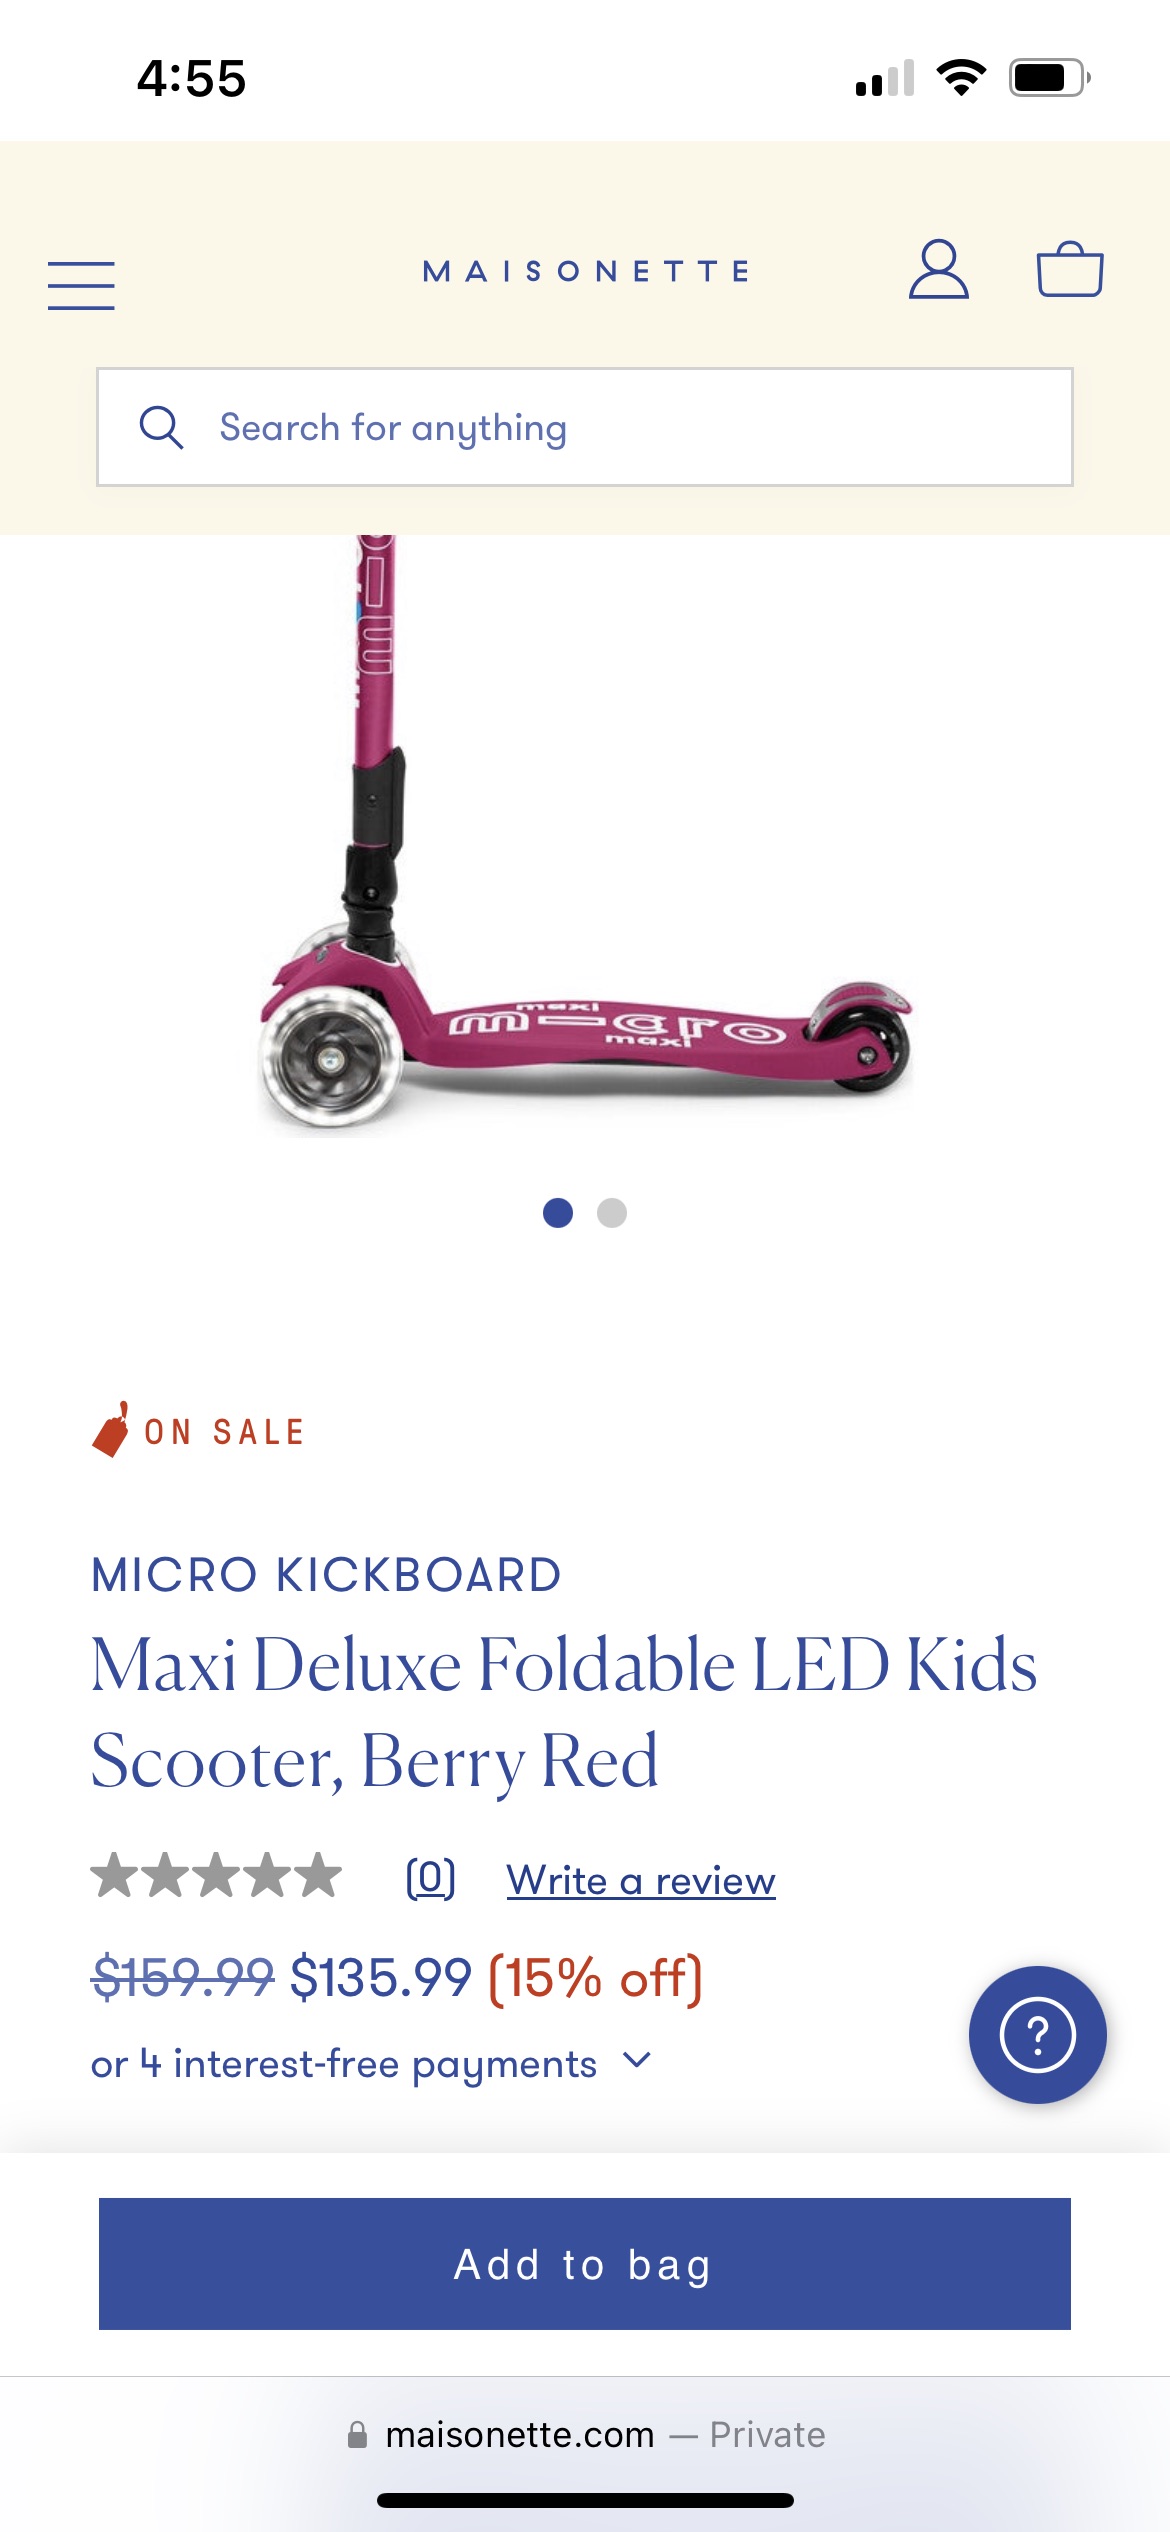 Micro 瑞士米高儿童滑板车特卖 7.5折起
满$75，美国境内免运费